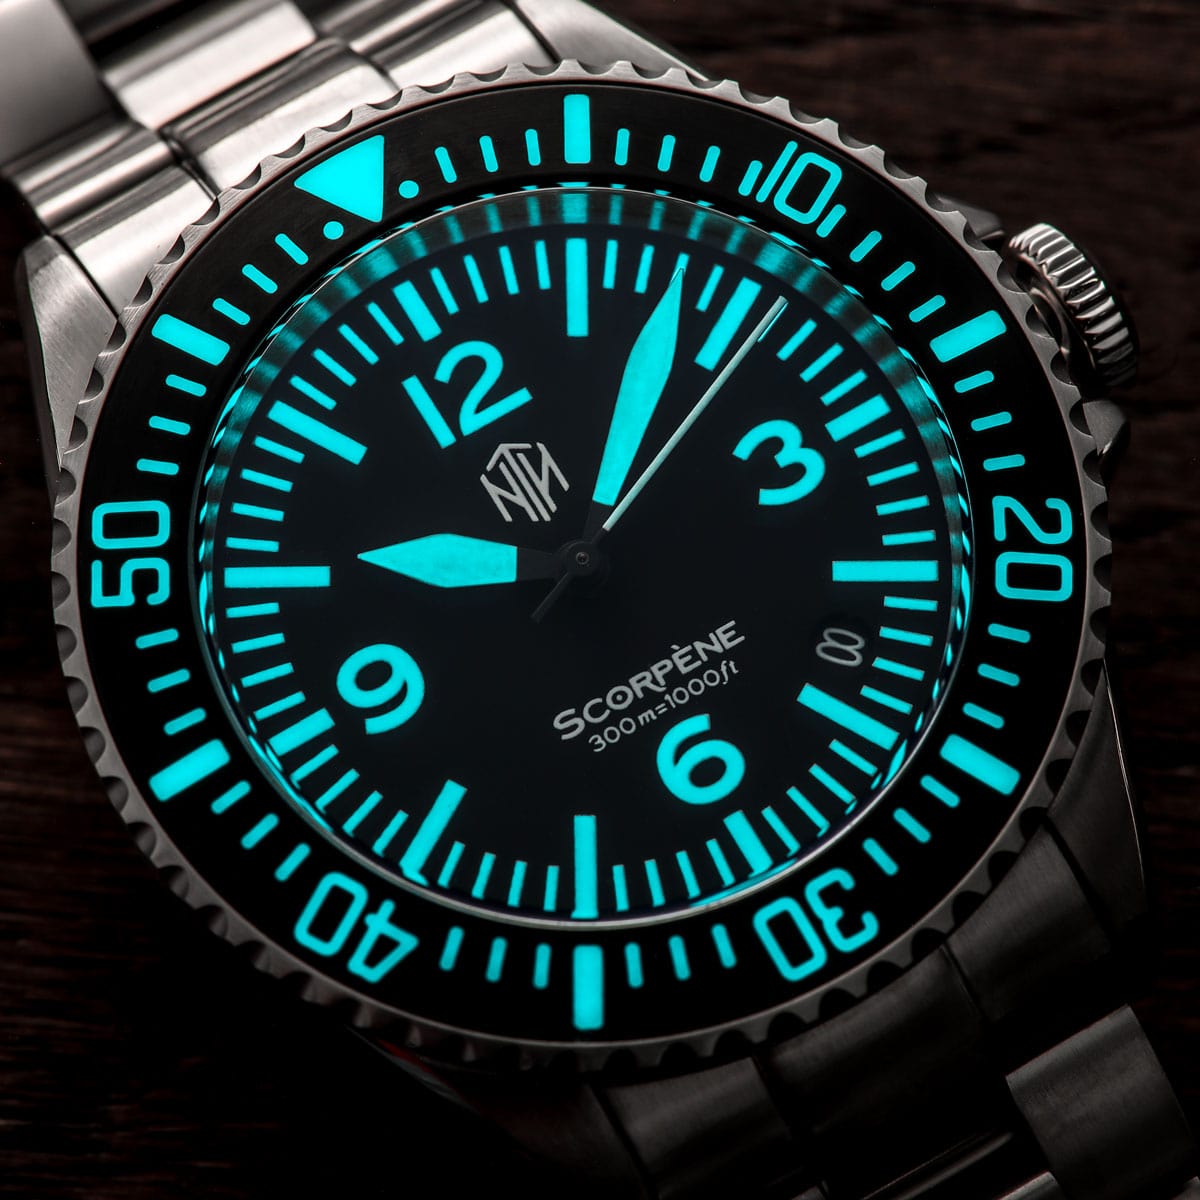 NTH Scorpène Dive watch - Oyster Bracelet - Date - LIKE NEW